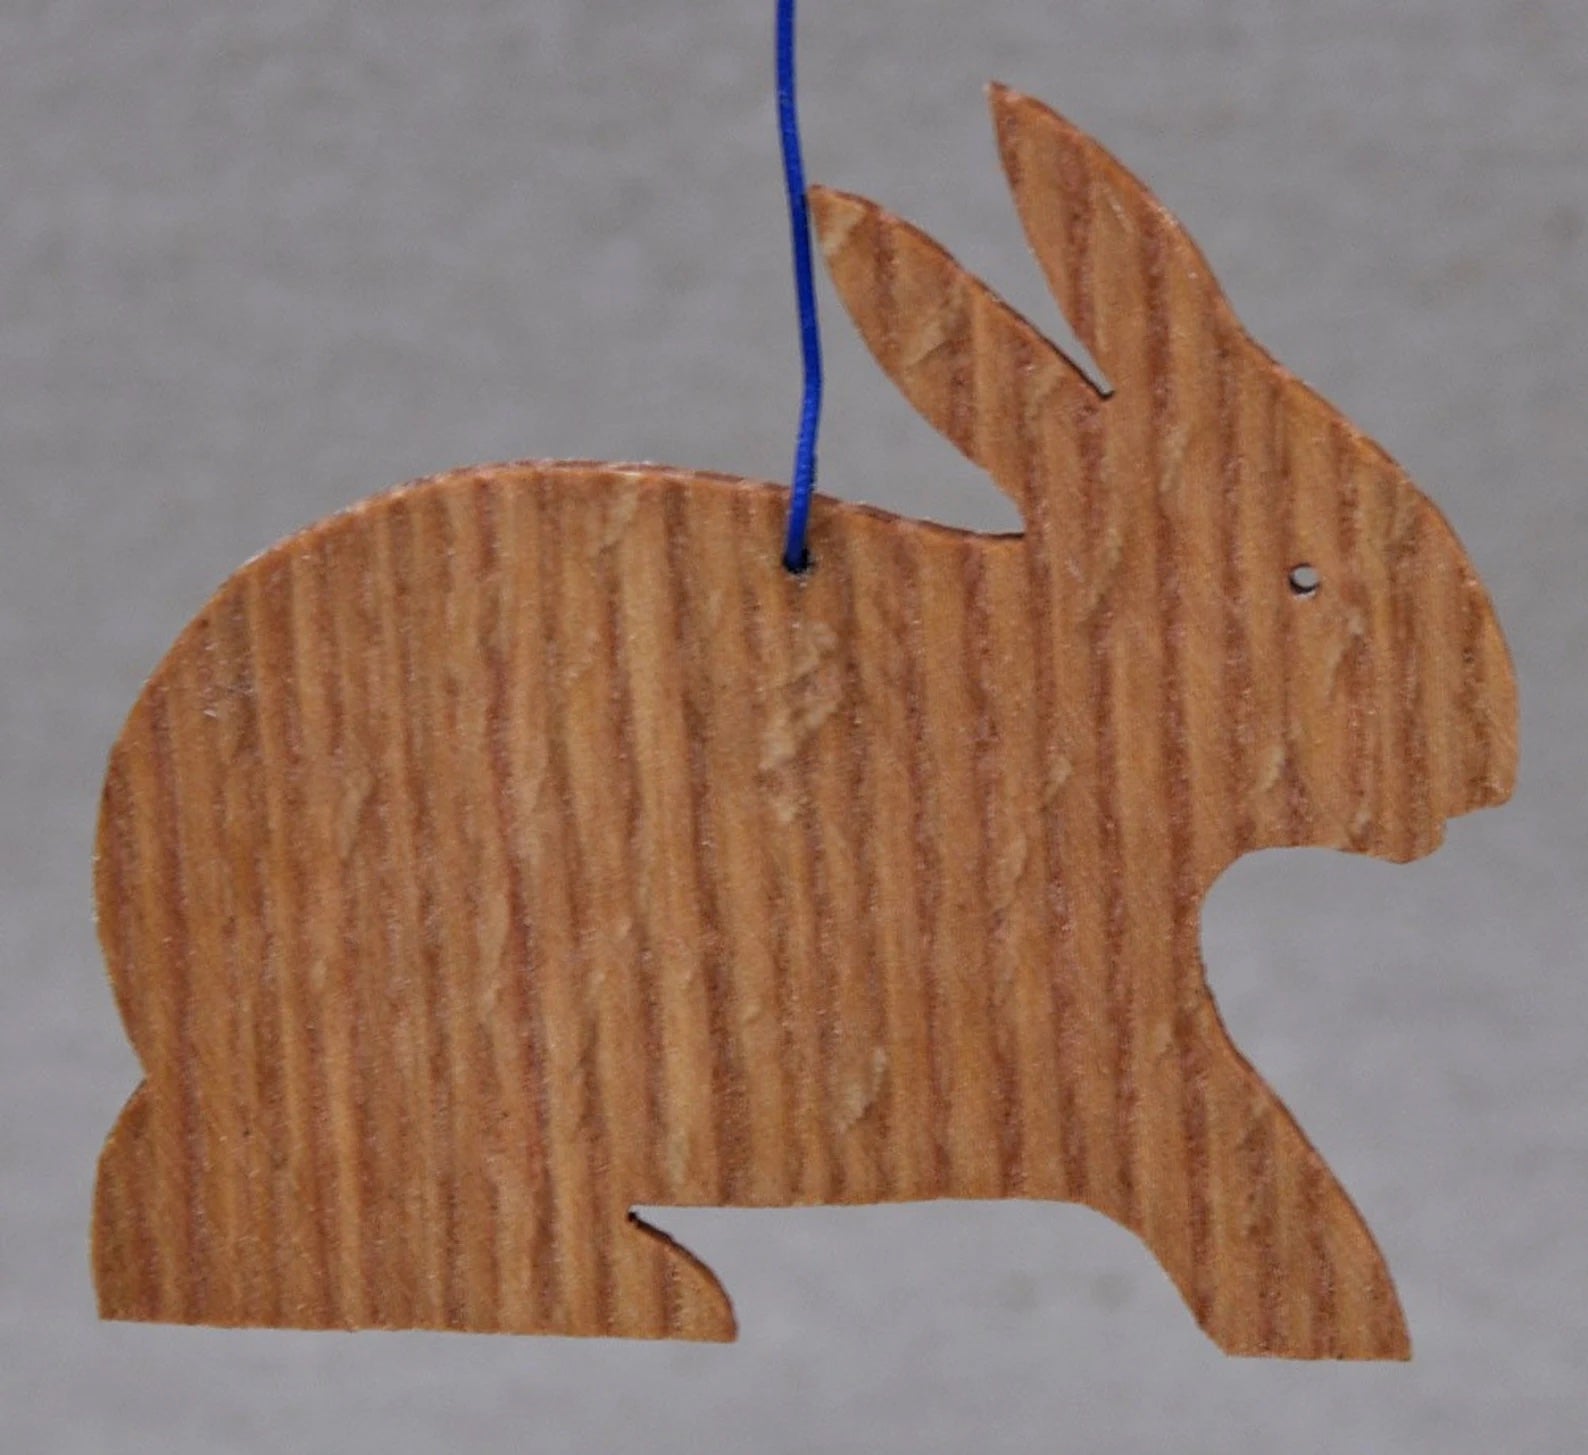 Rabbit wooden ornament